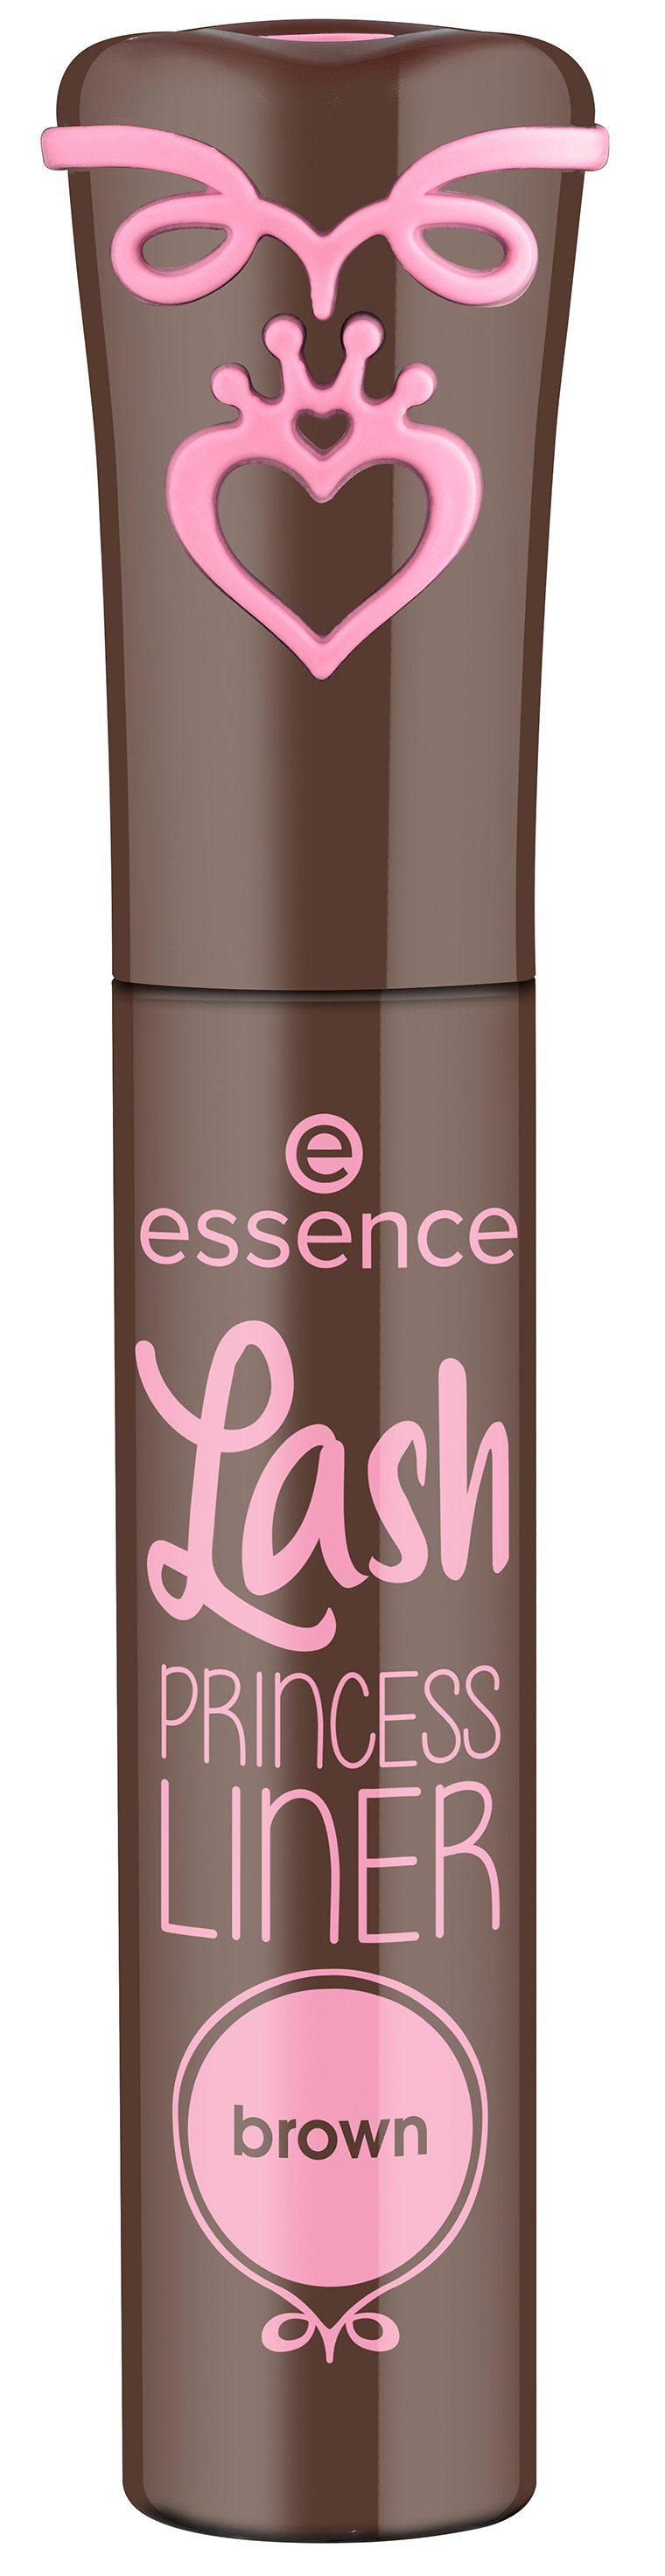 5-tlg. LINER Essence PRINCESS brown, Lash Eyeliner